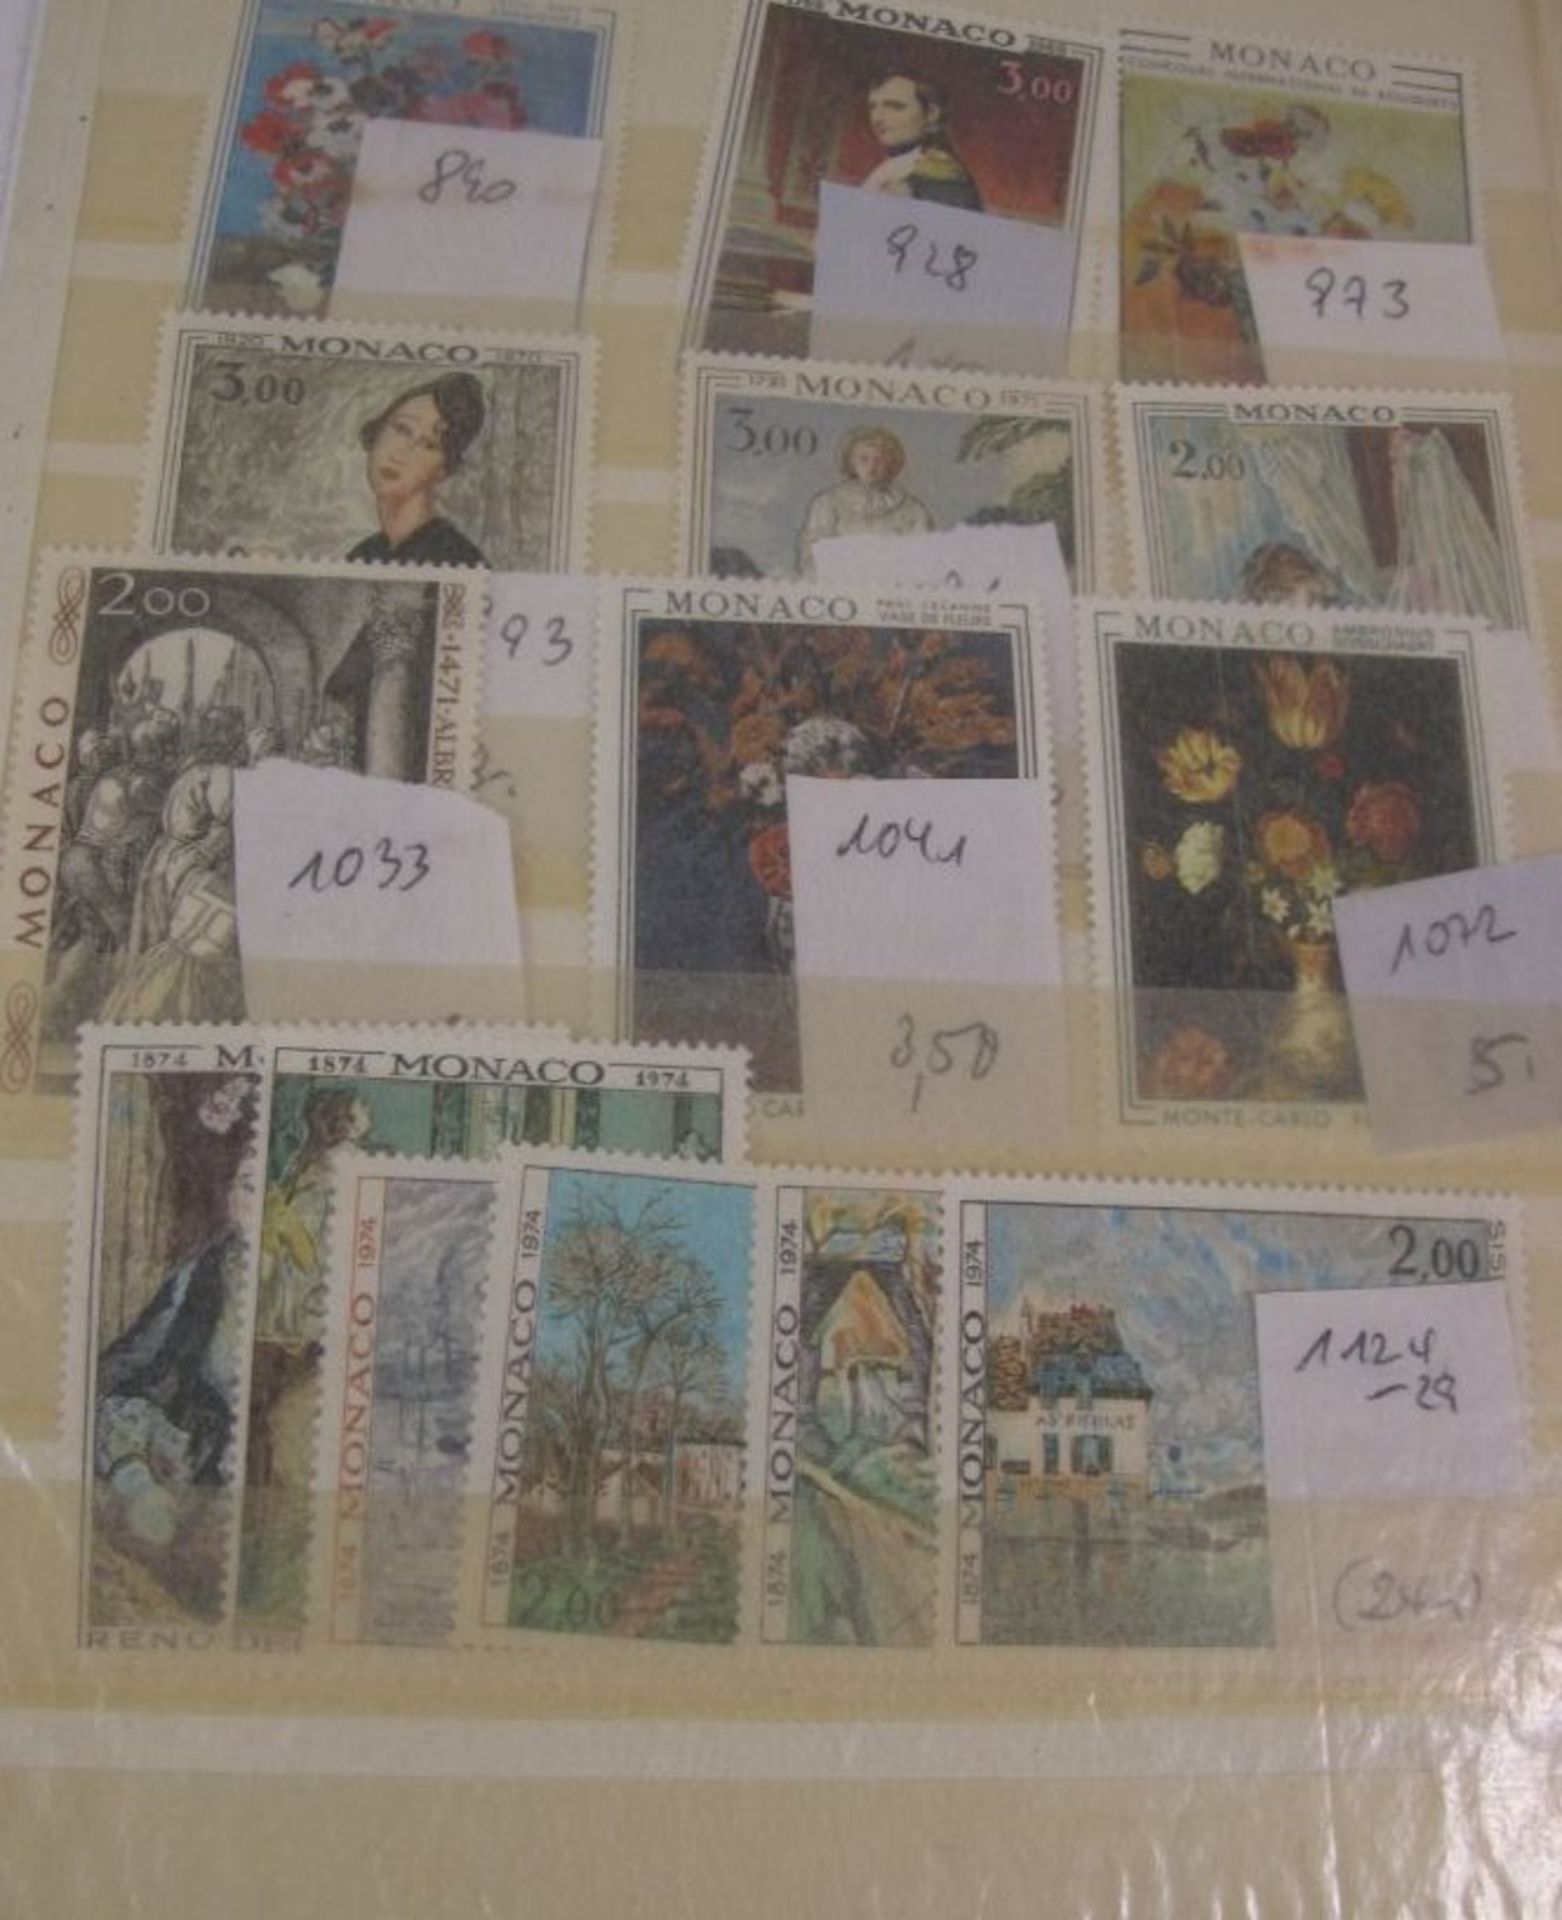 kl. Album mit div. Gemäldemarken, Frankreich u. Monaco, postfrisch. - Bild 4 aus 4